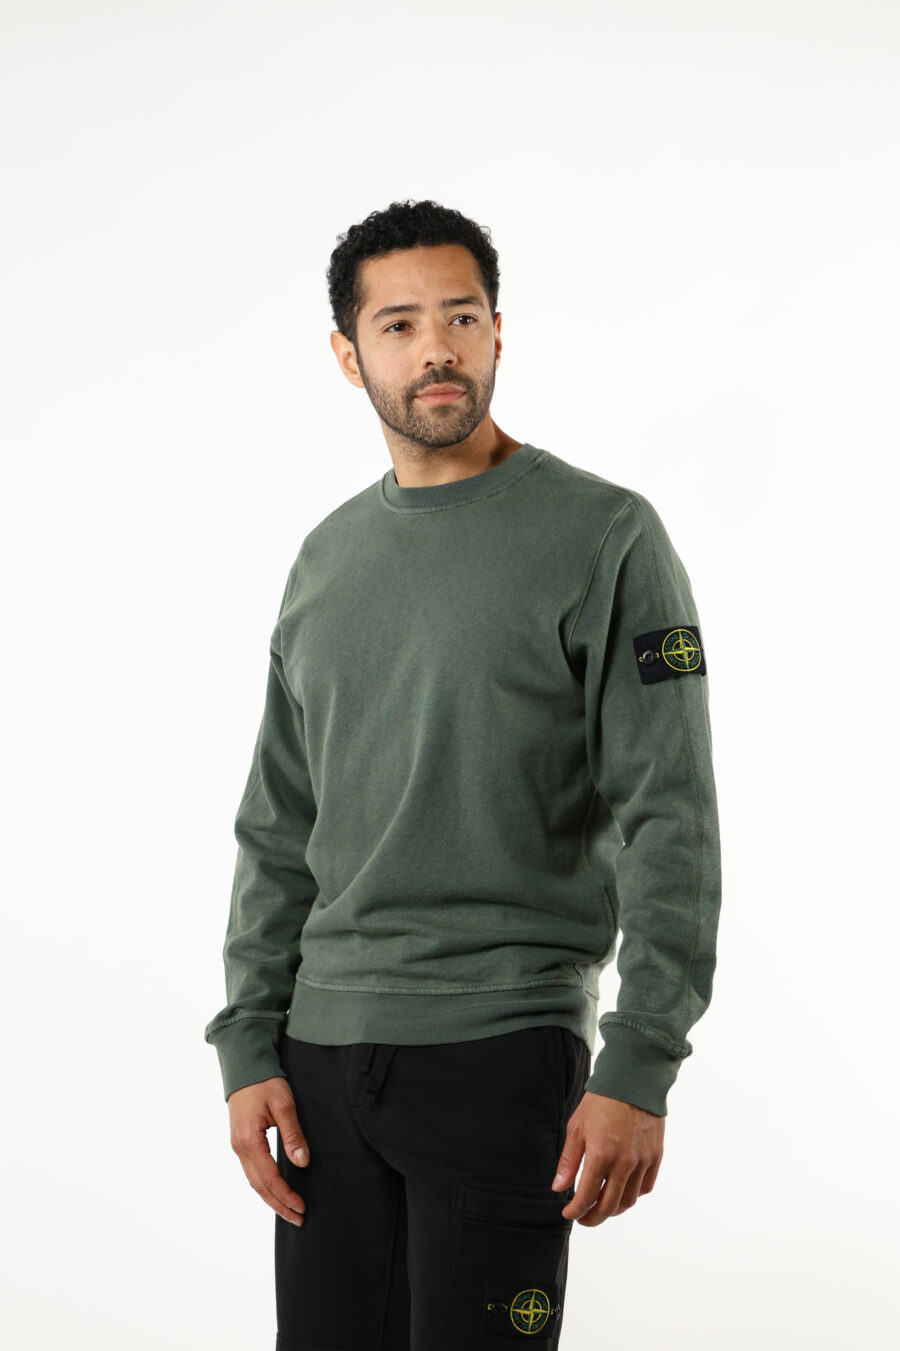 Grünes Sweatshirt mit Kompass-Logoaufnäher - 111391